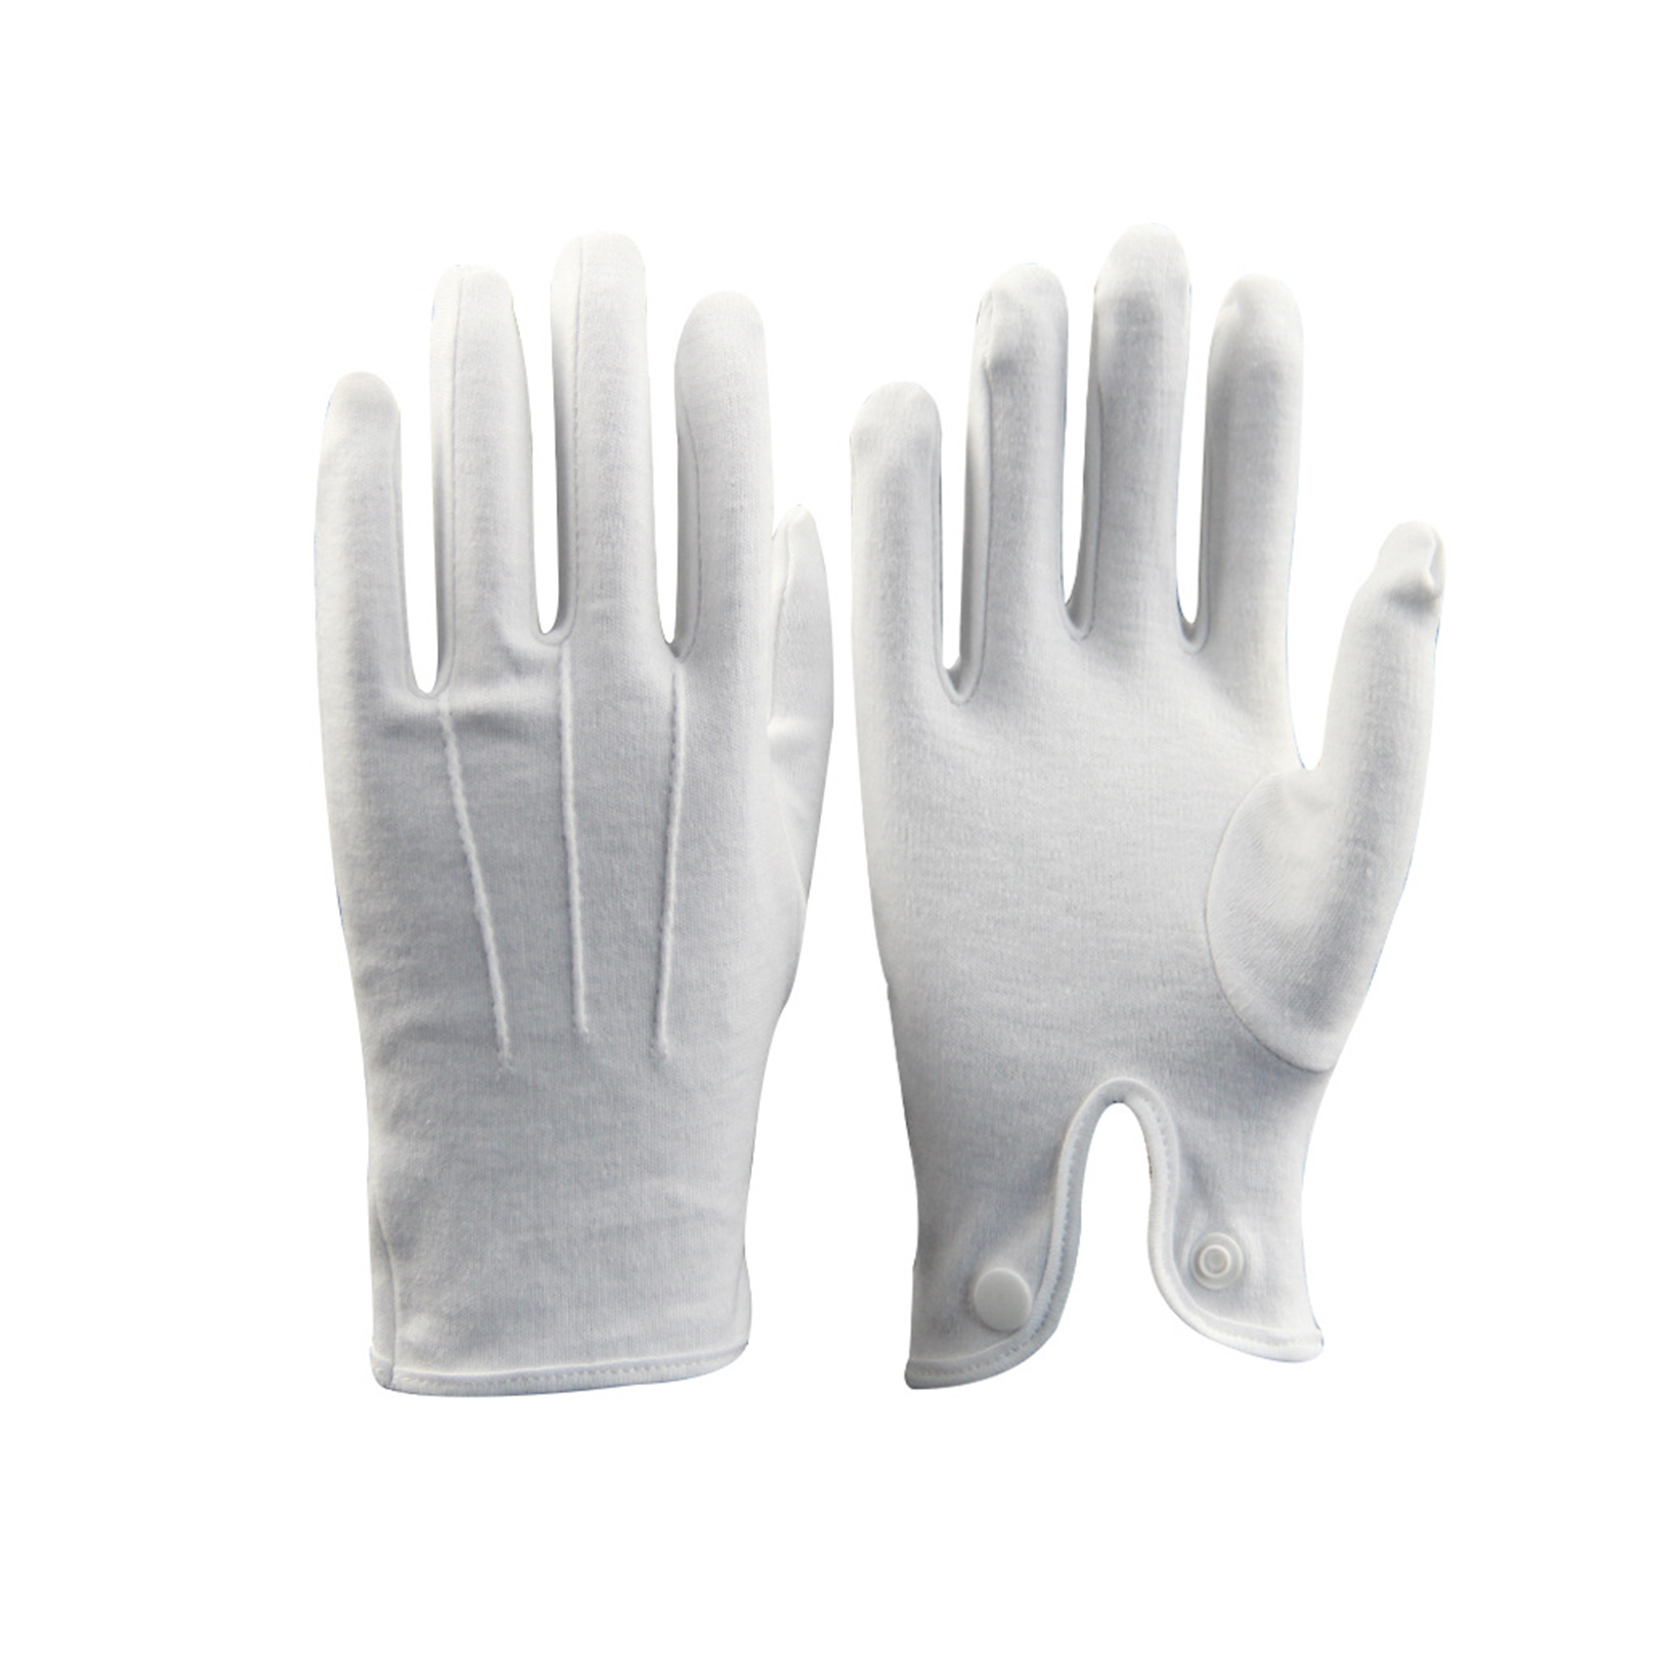 Großhandel Weiße Baumwolle Elastische Manschette Etikette Befehl Handschuhe Herren Dame Schmuck Inspektion Handschuhe